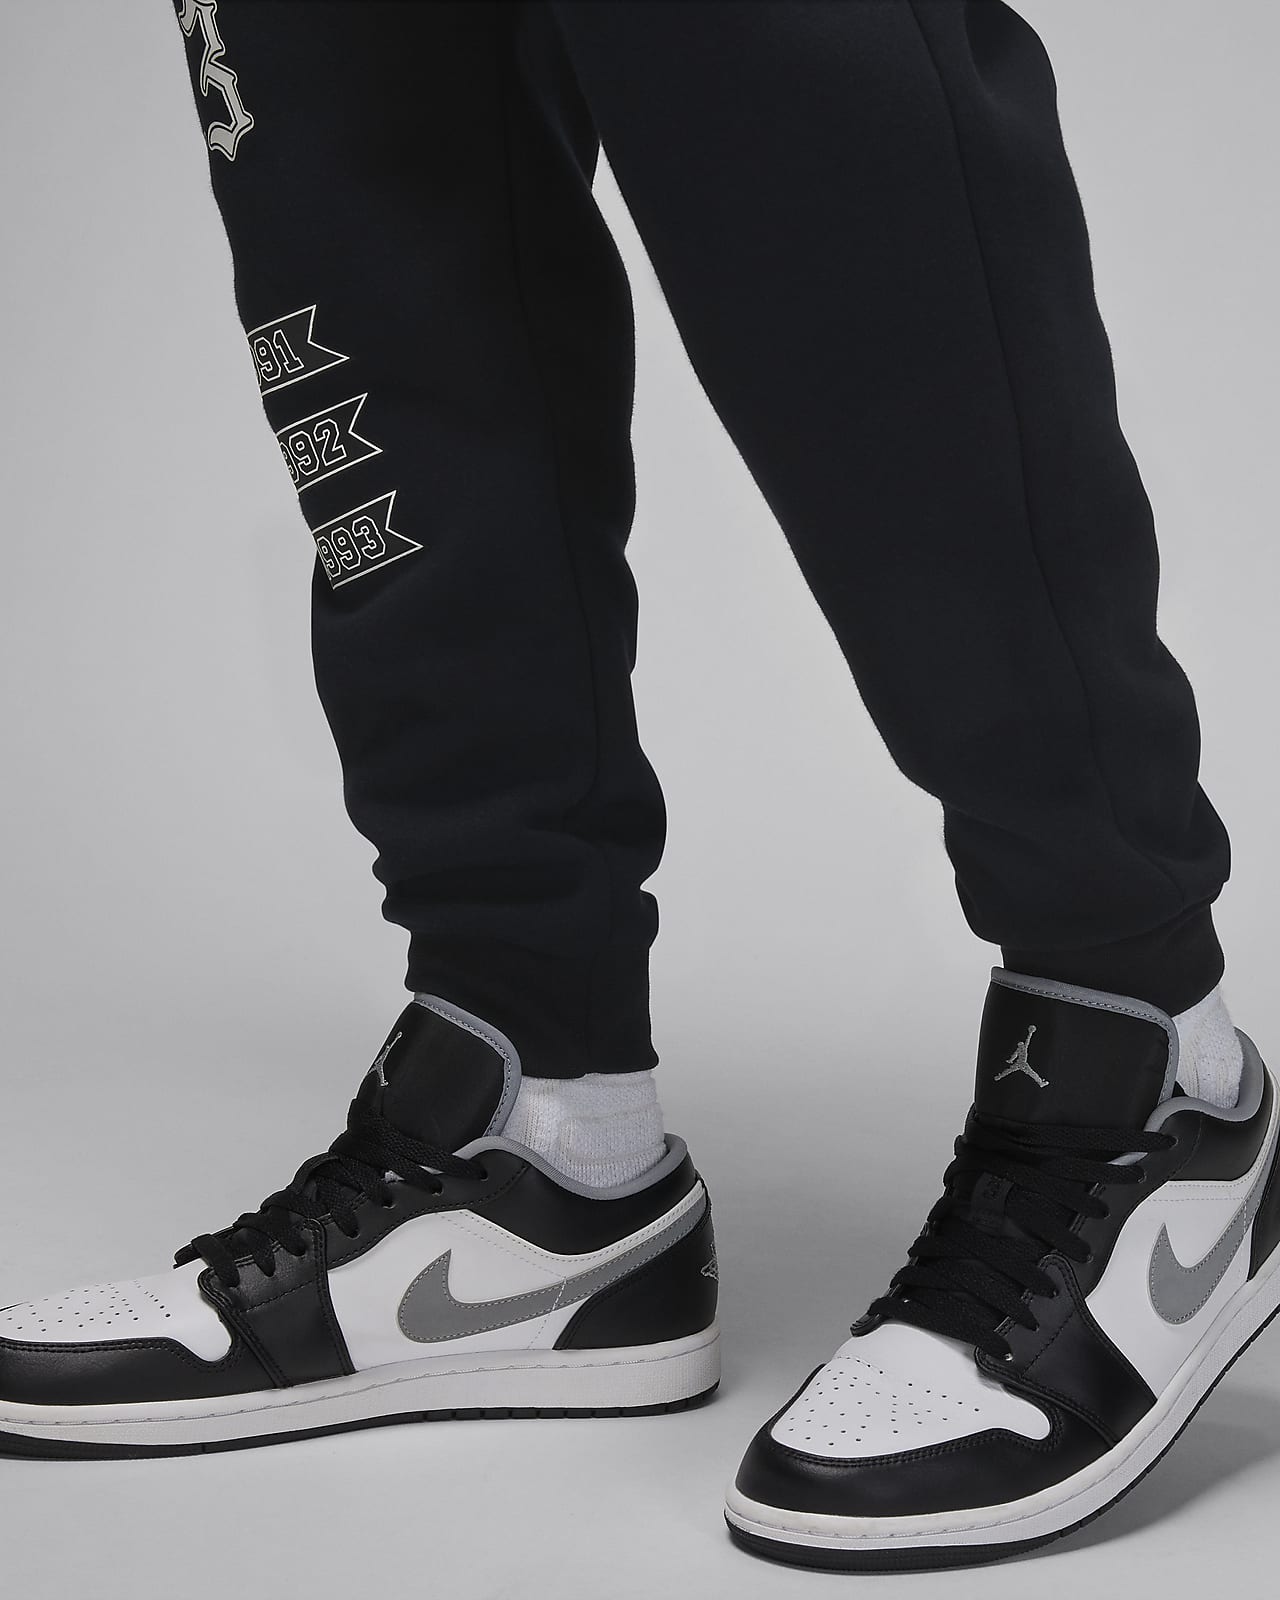 Nike Bas de Survêtement Jordan Essentials Fleece - Gris/Noir/Blanc